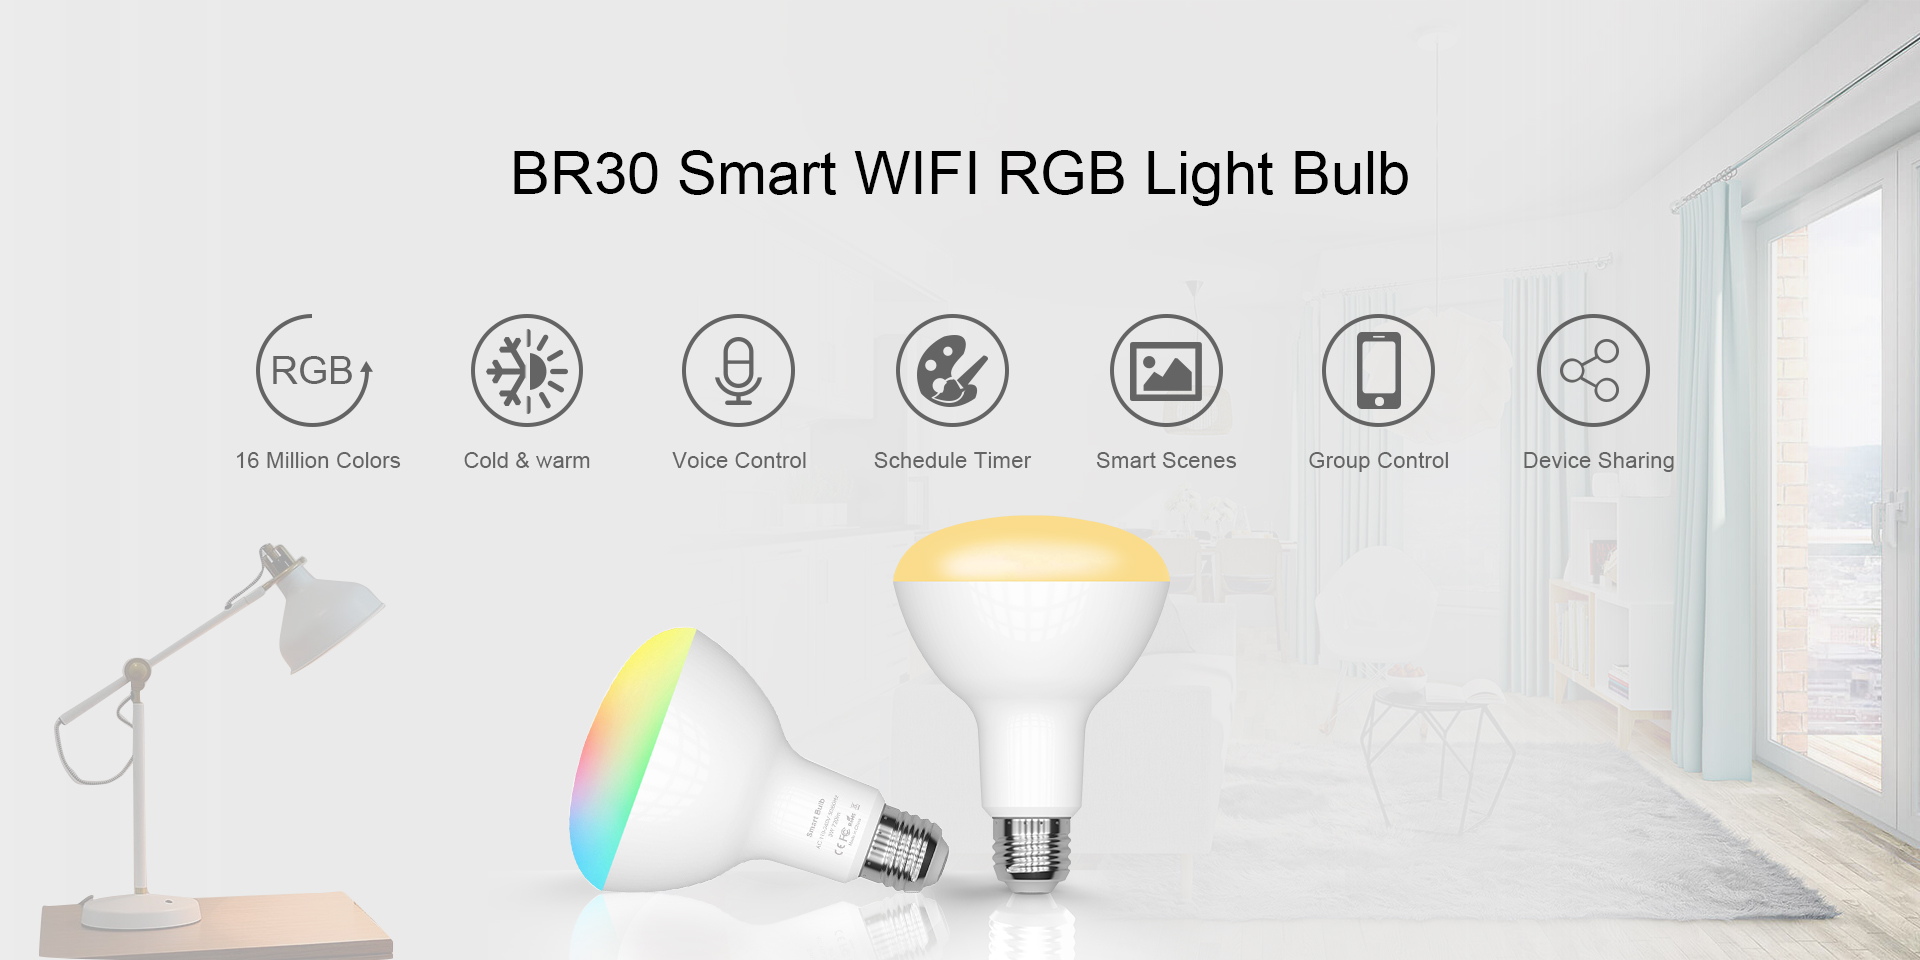 BR30 Smart RBG Light Bulb